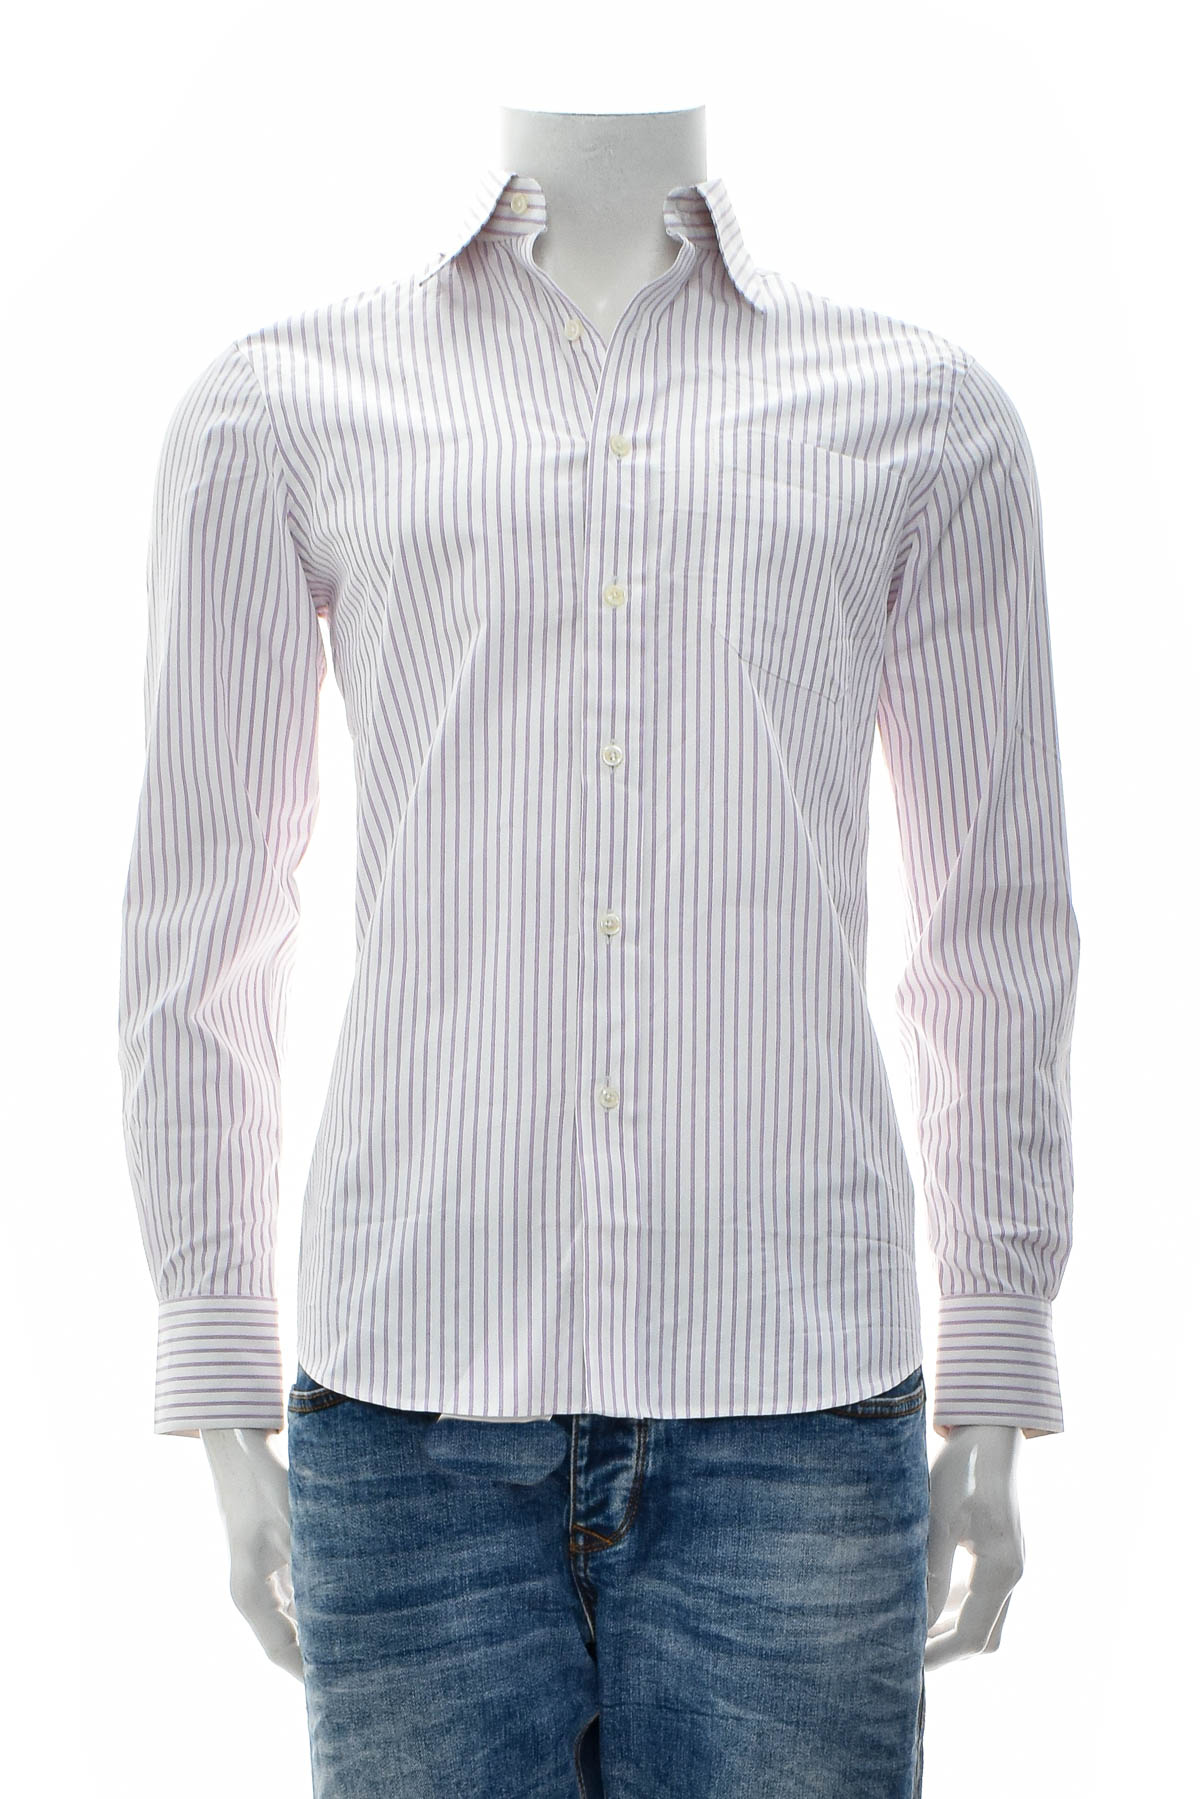 Ανδρικό πουκάμισο - ATBoutique - 0